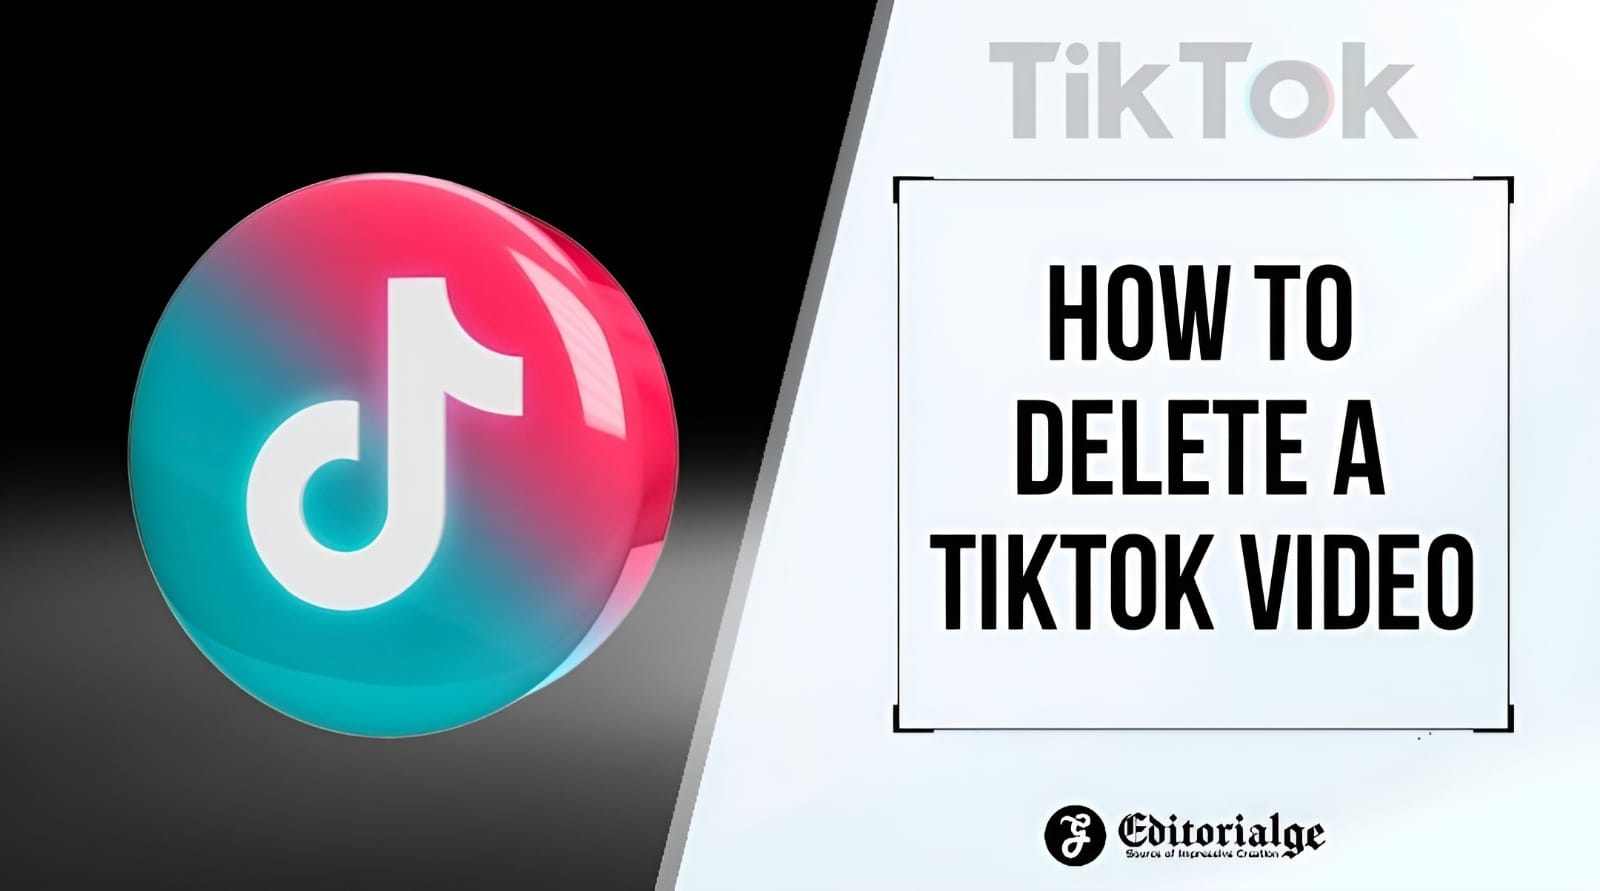 How to Delete a Tiktok Video